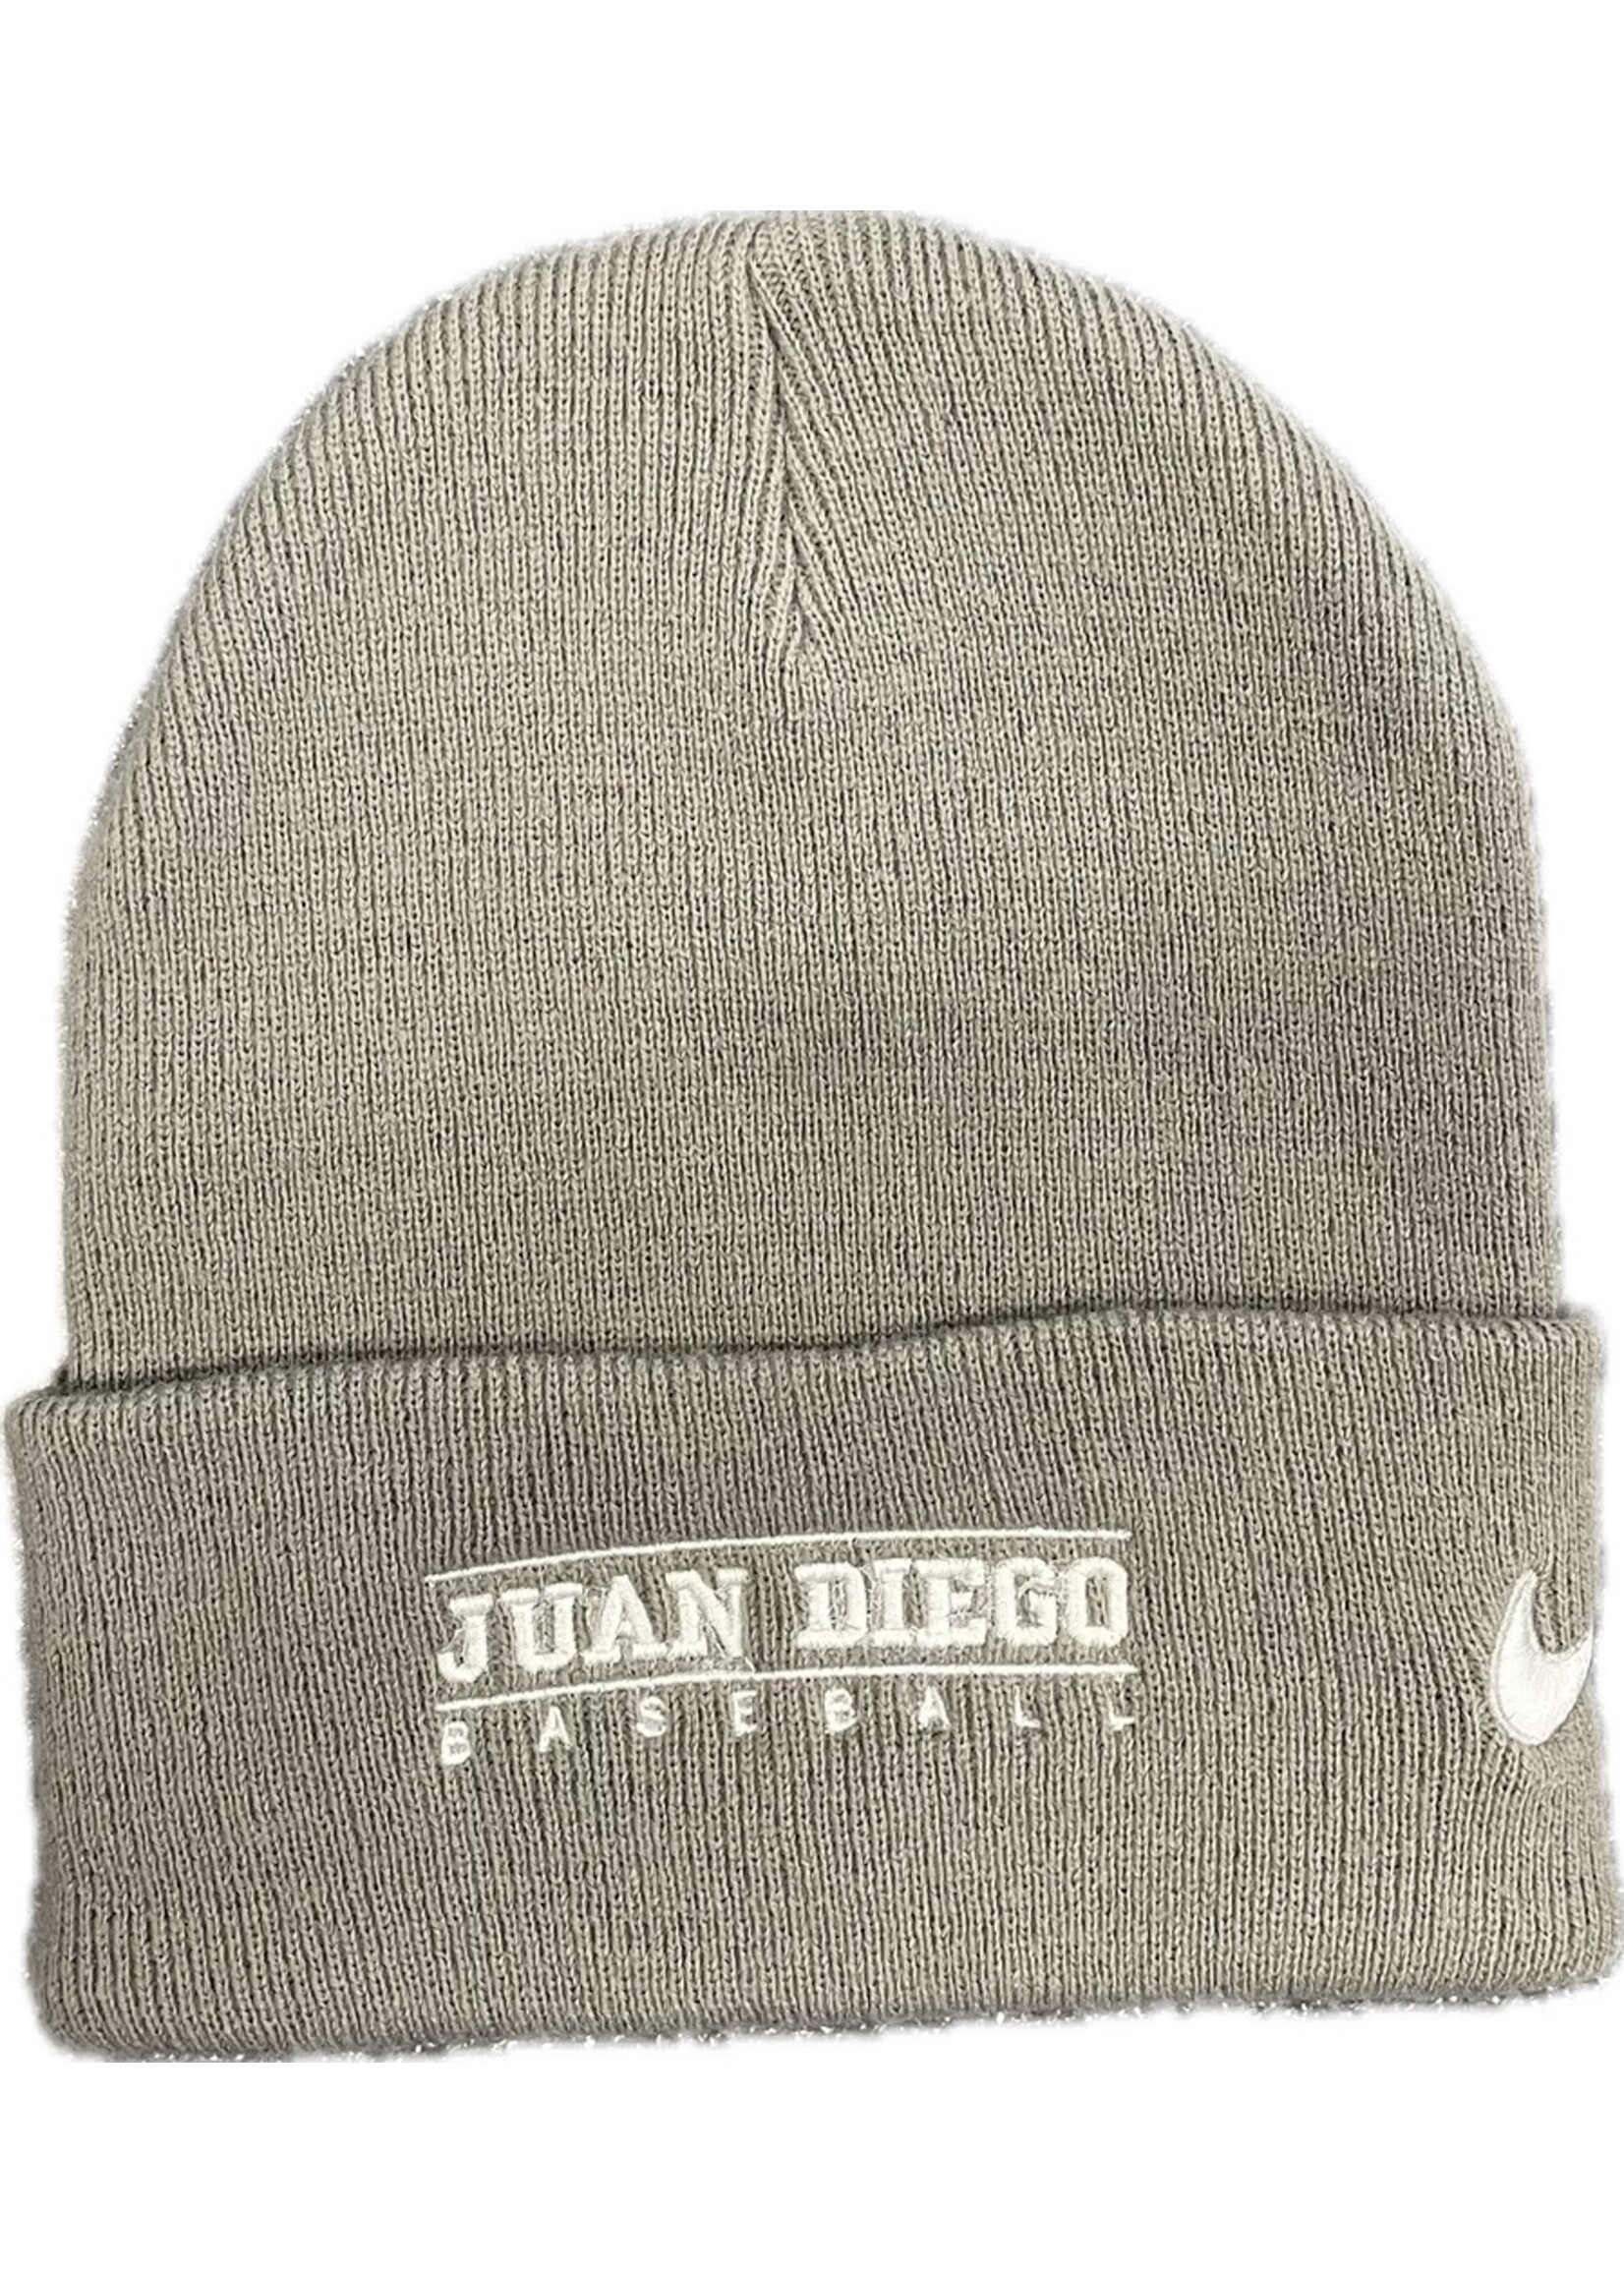 NON-UNIFORM Juan Diego Baseball Nike Cuffed Beanie